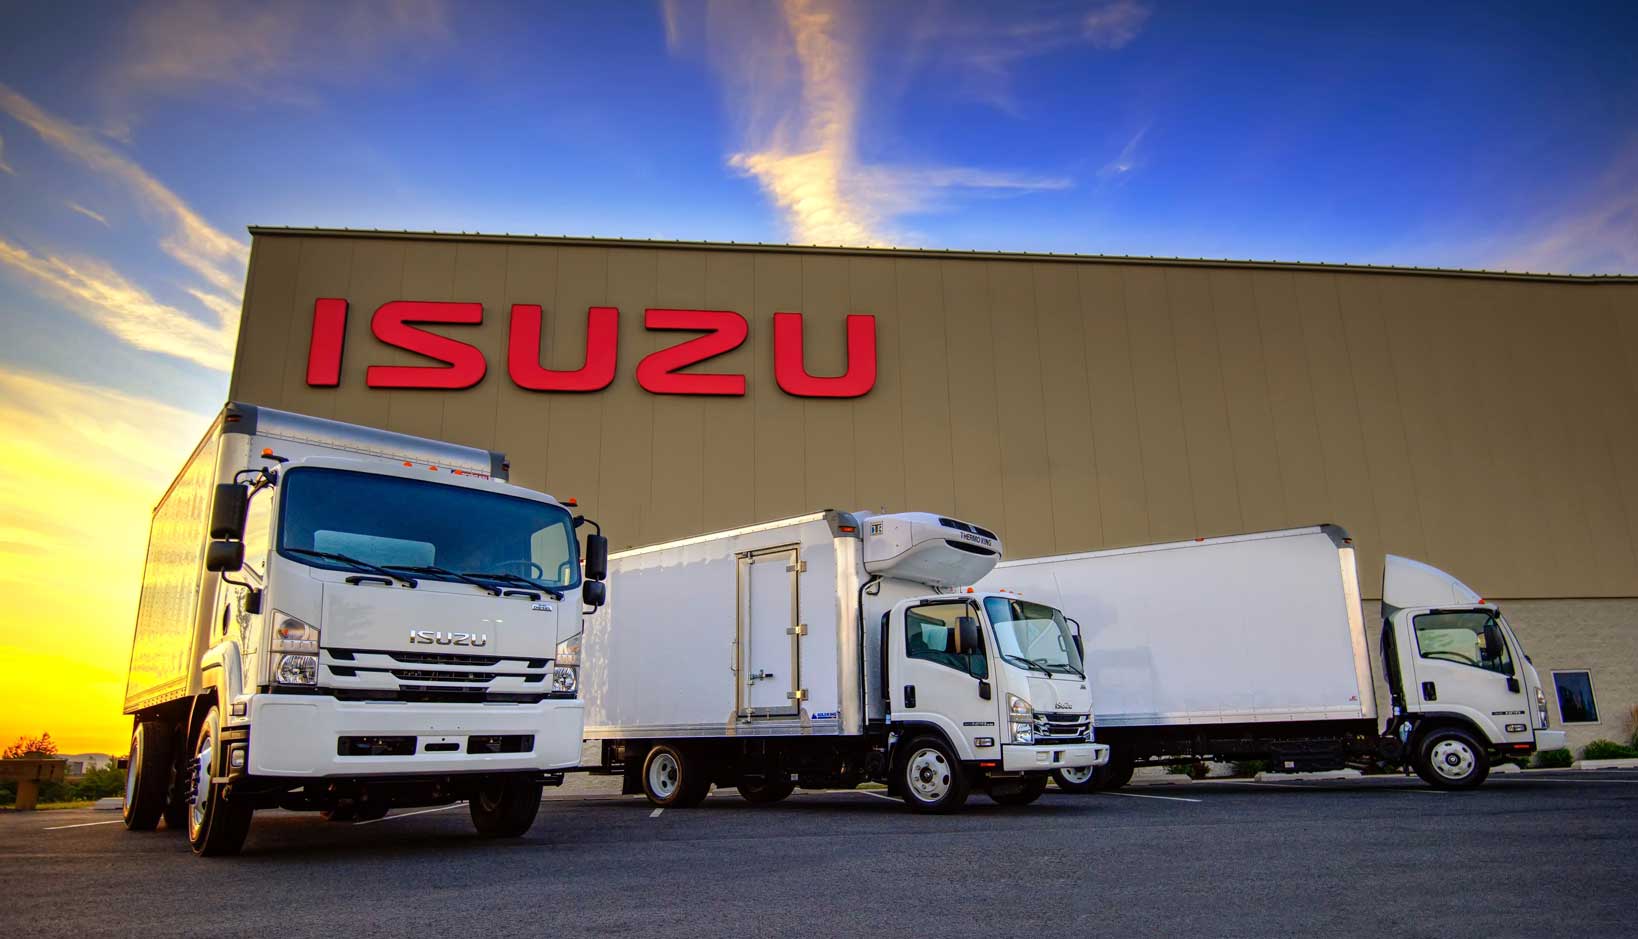 isuzu trucks